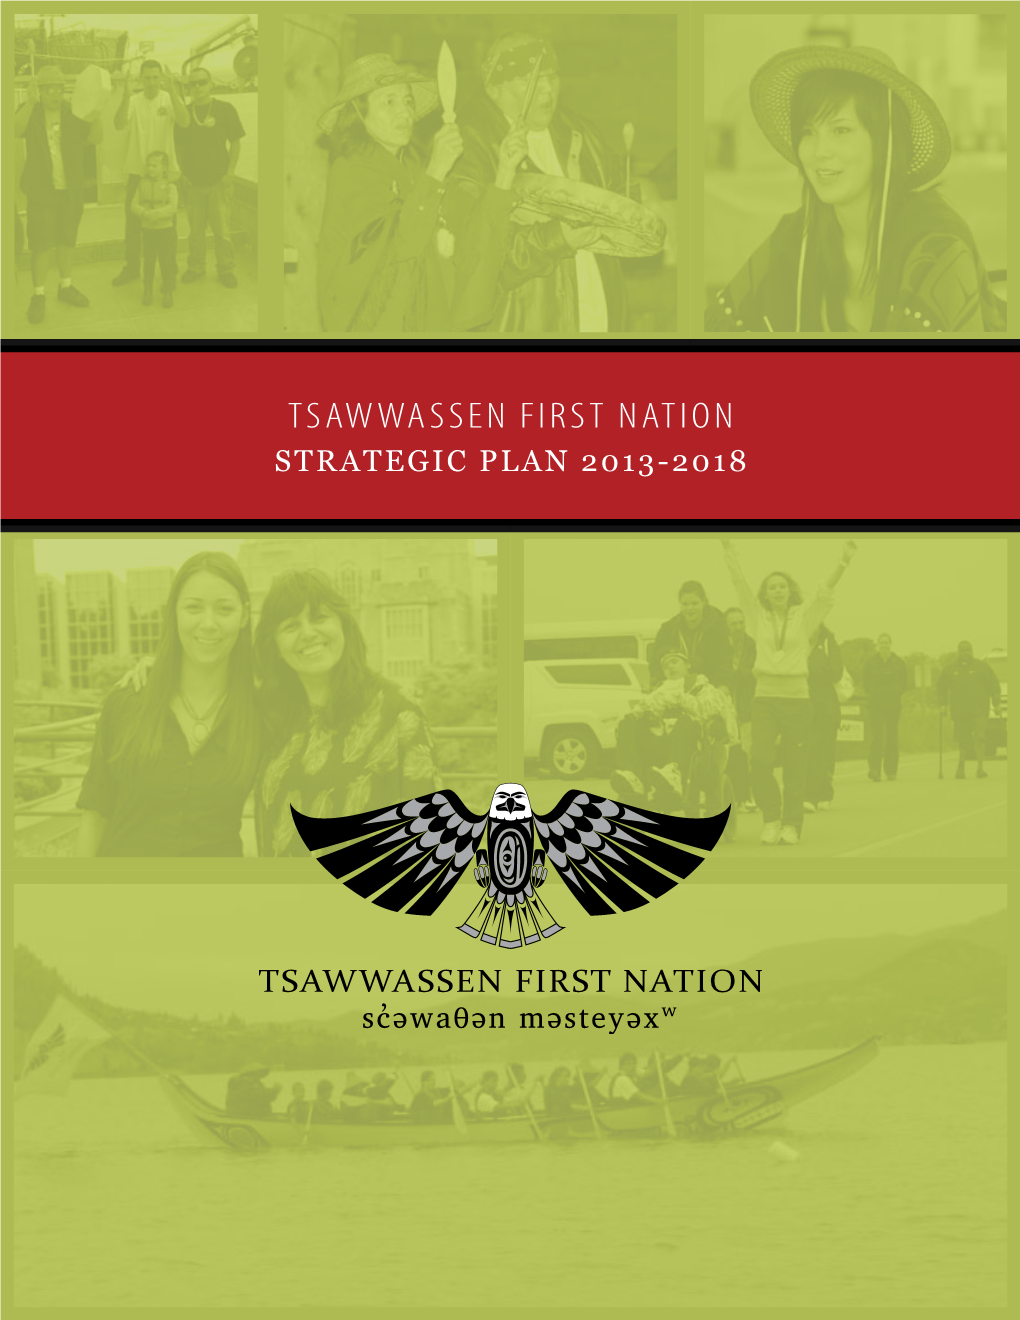 Strategic Plan 2013-2018 [ 2 ] Tsawwassen First Nation Contents